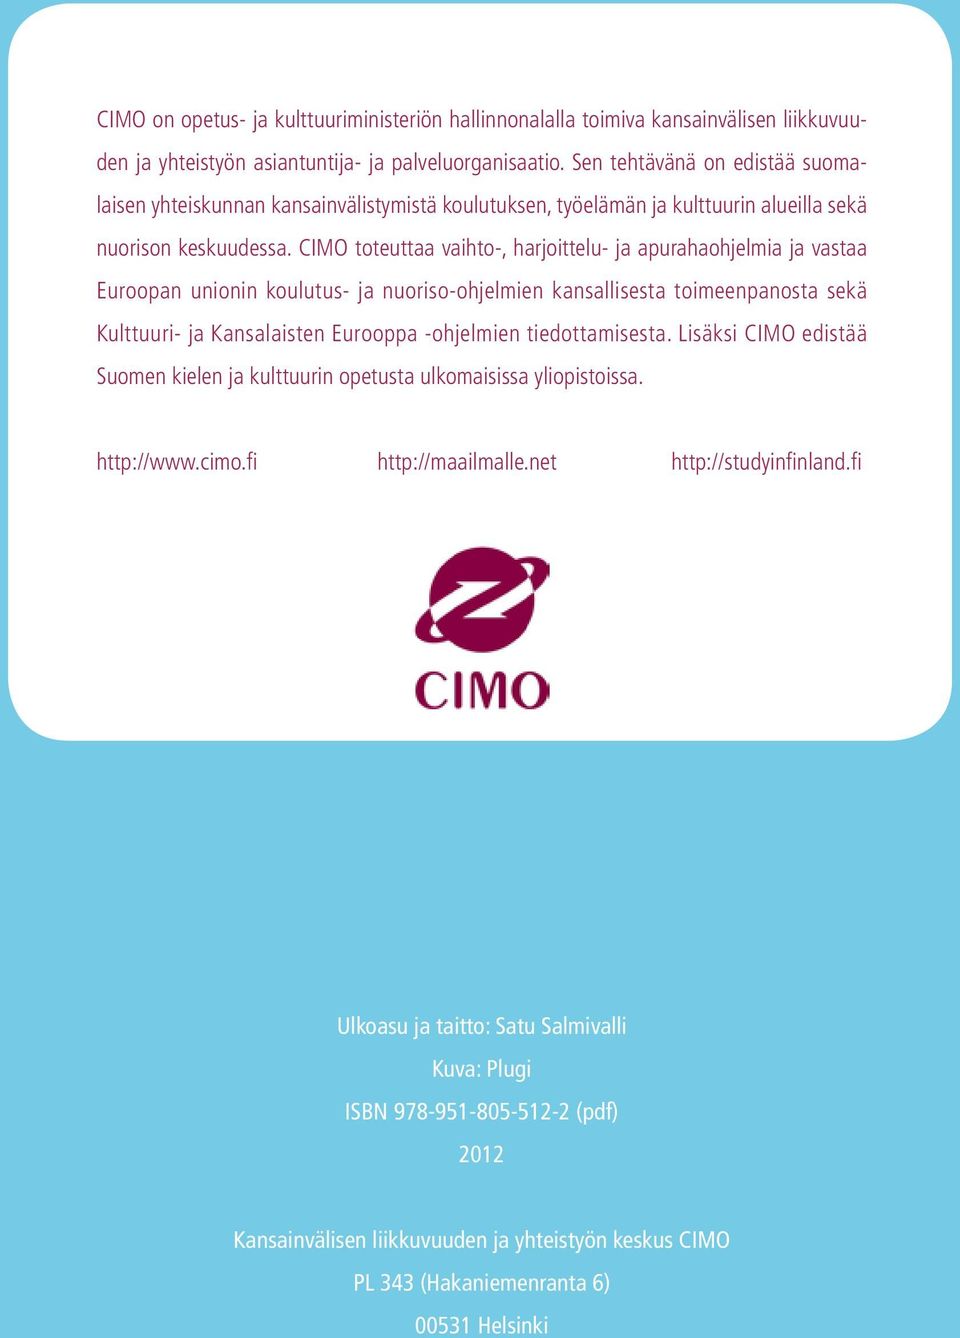 CIMO toteuttaa vaihto-, harjoittelu- ja apurahaohjelmia ja vastaa Euroopan unionin koulutus- ja nuoriso-ohjelmien kansallisesta toimeenpanosta sekä Kulttuuri- ja Kansalaisten Eurooppa -ohjelmien